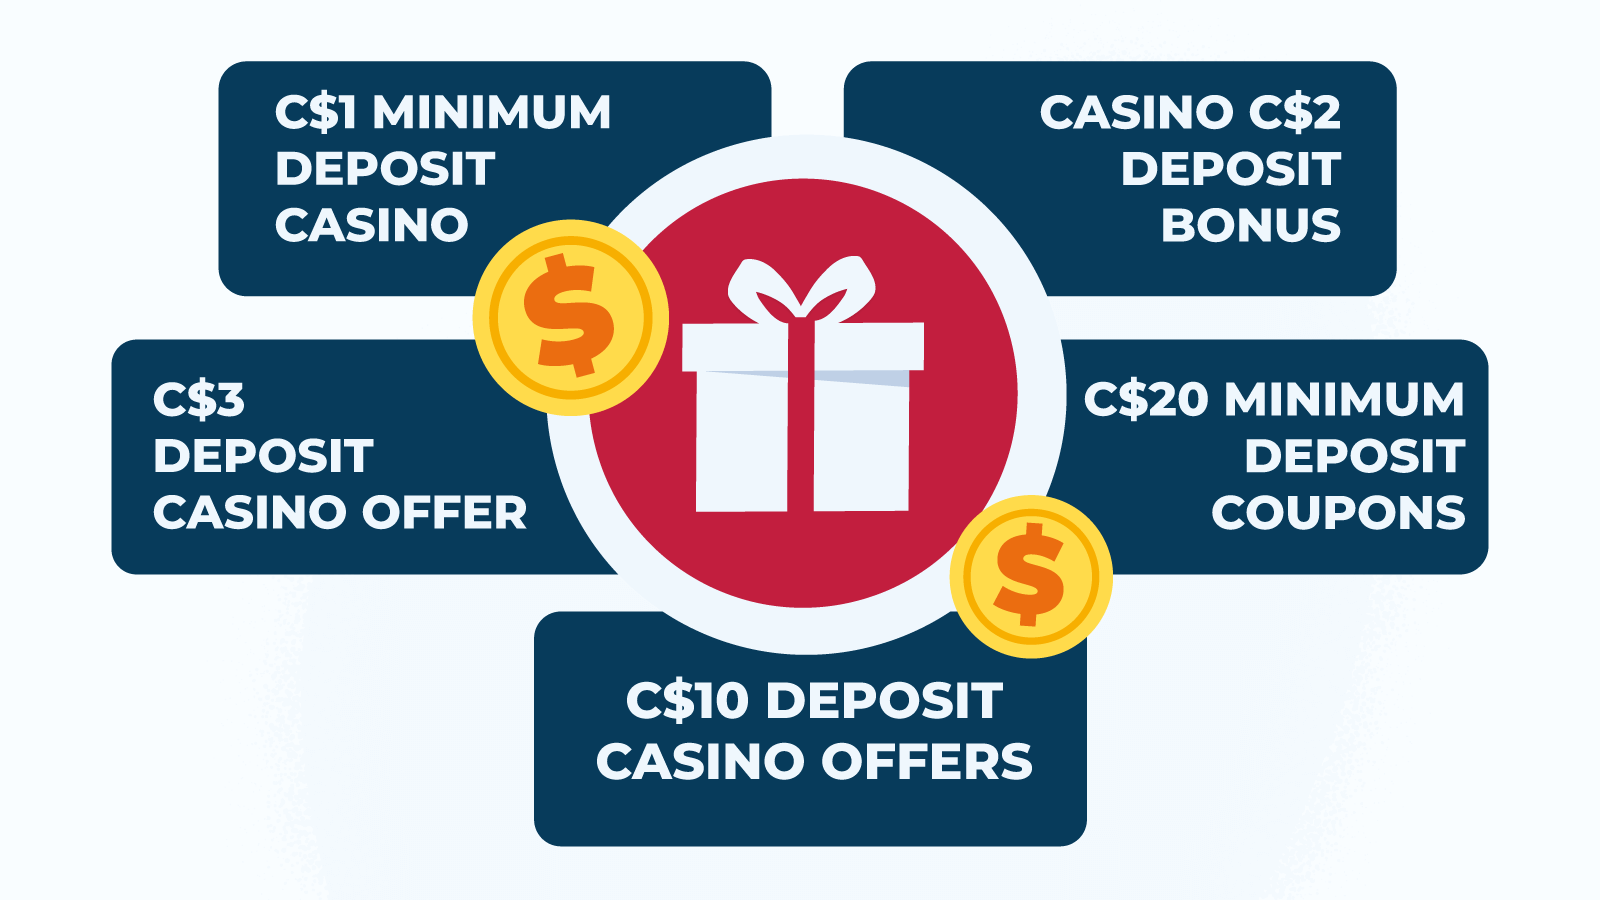 Low minimum deposit bonus types